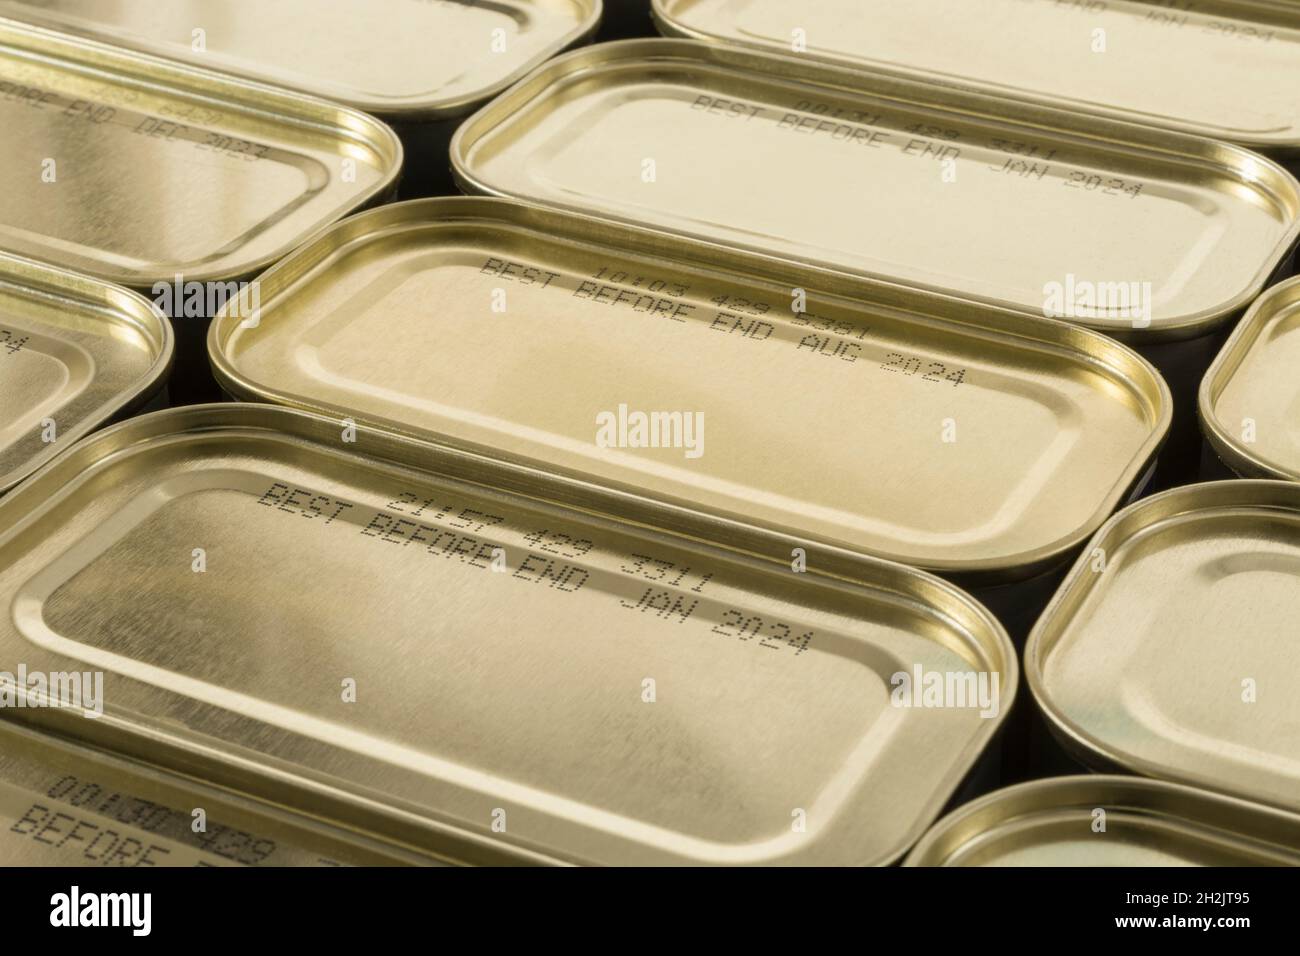 Barattoli di metallo astratti con parte di cibo meglio prima della data visibile. Per la conservazione degli alimenti, la penuria di cibo pandemico nel Regno Unito, il blocco di accaparramento. Foto Stock